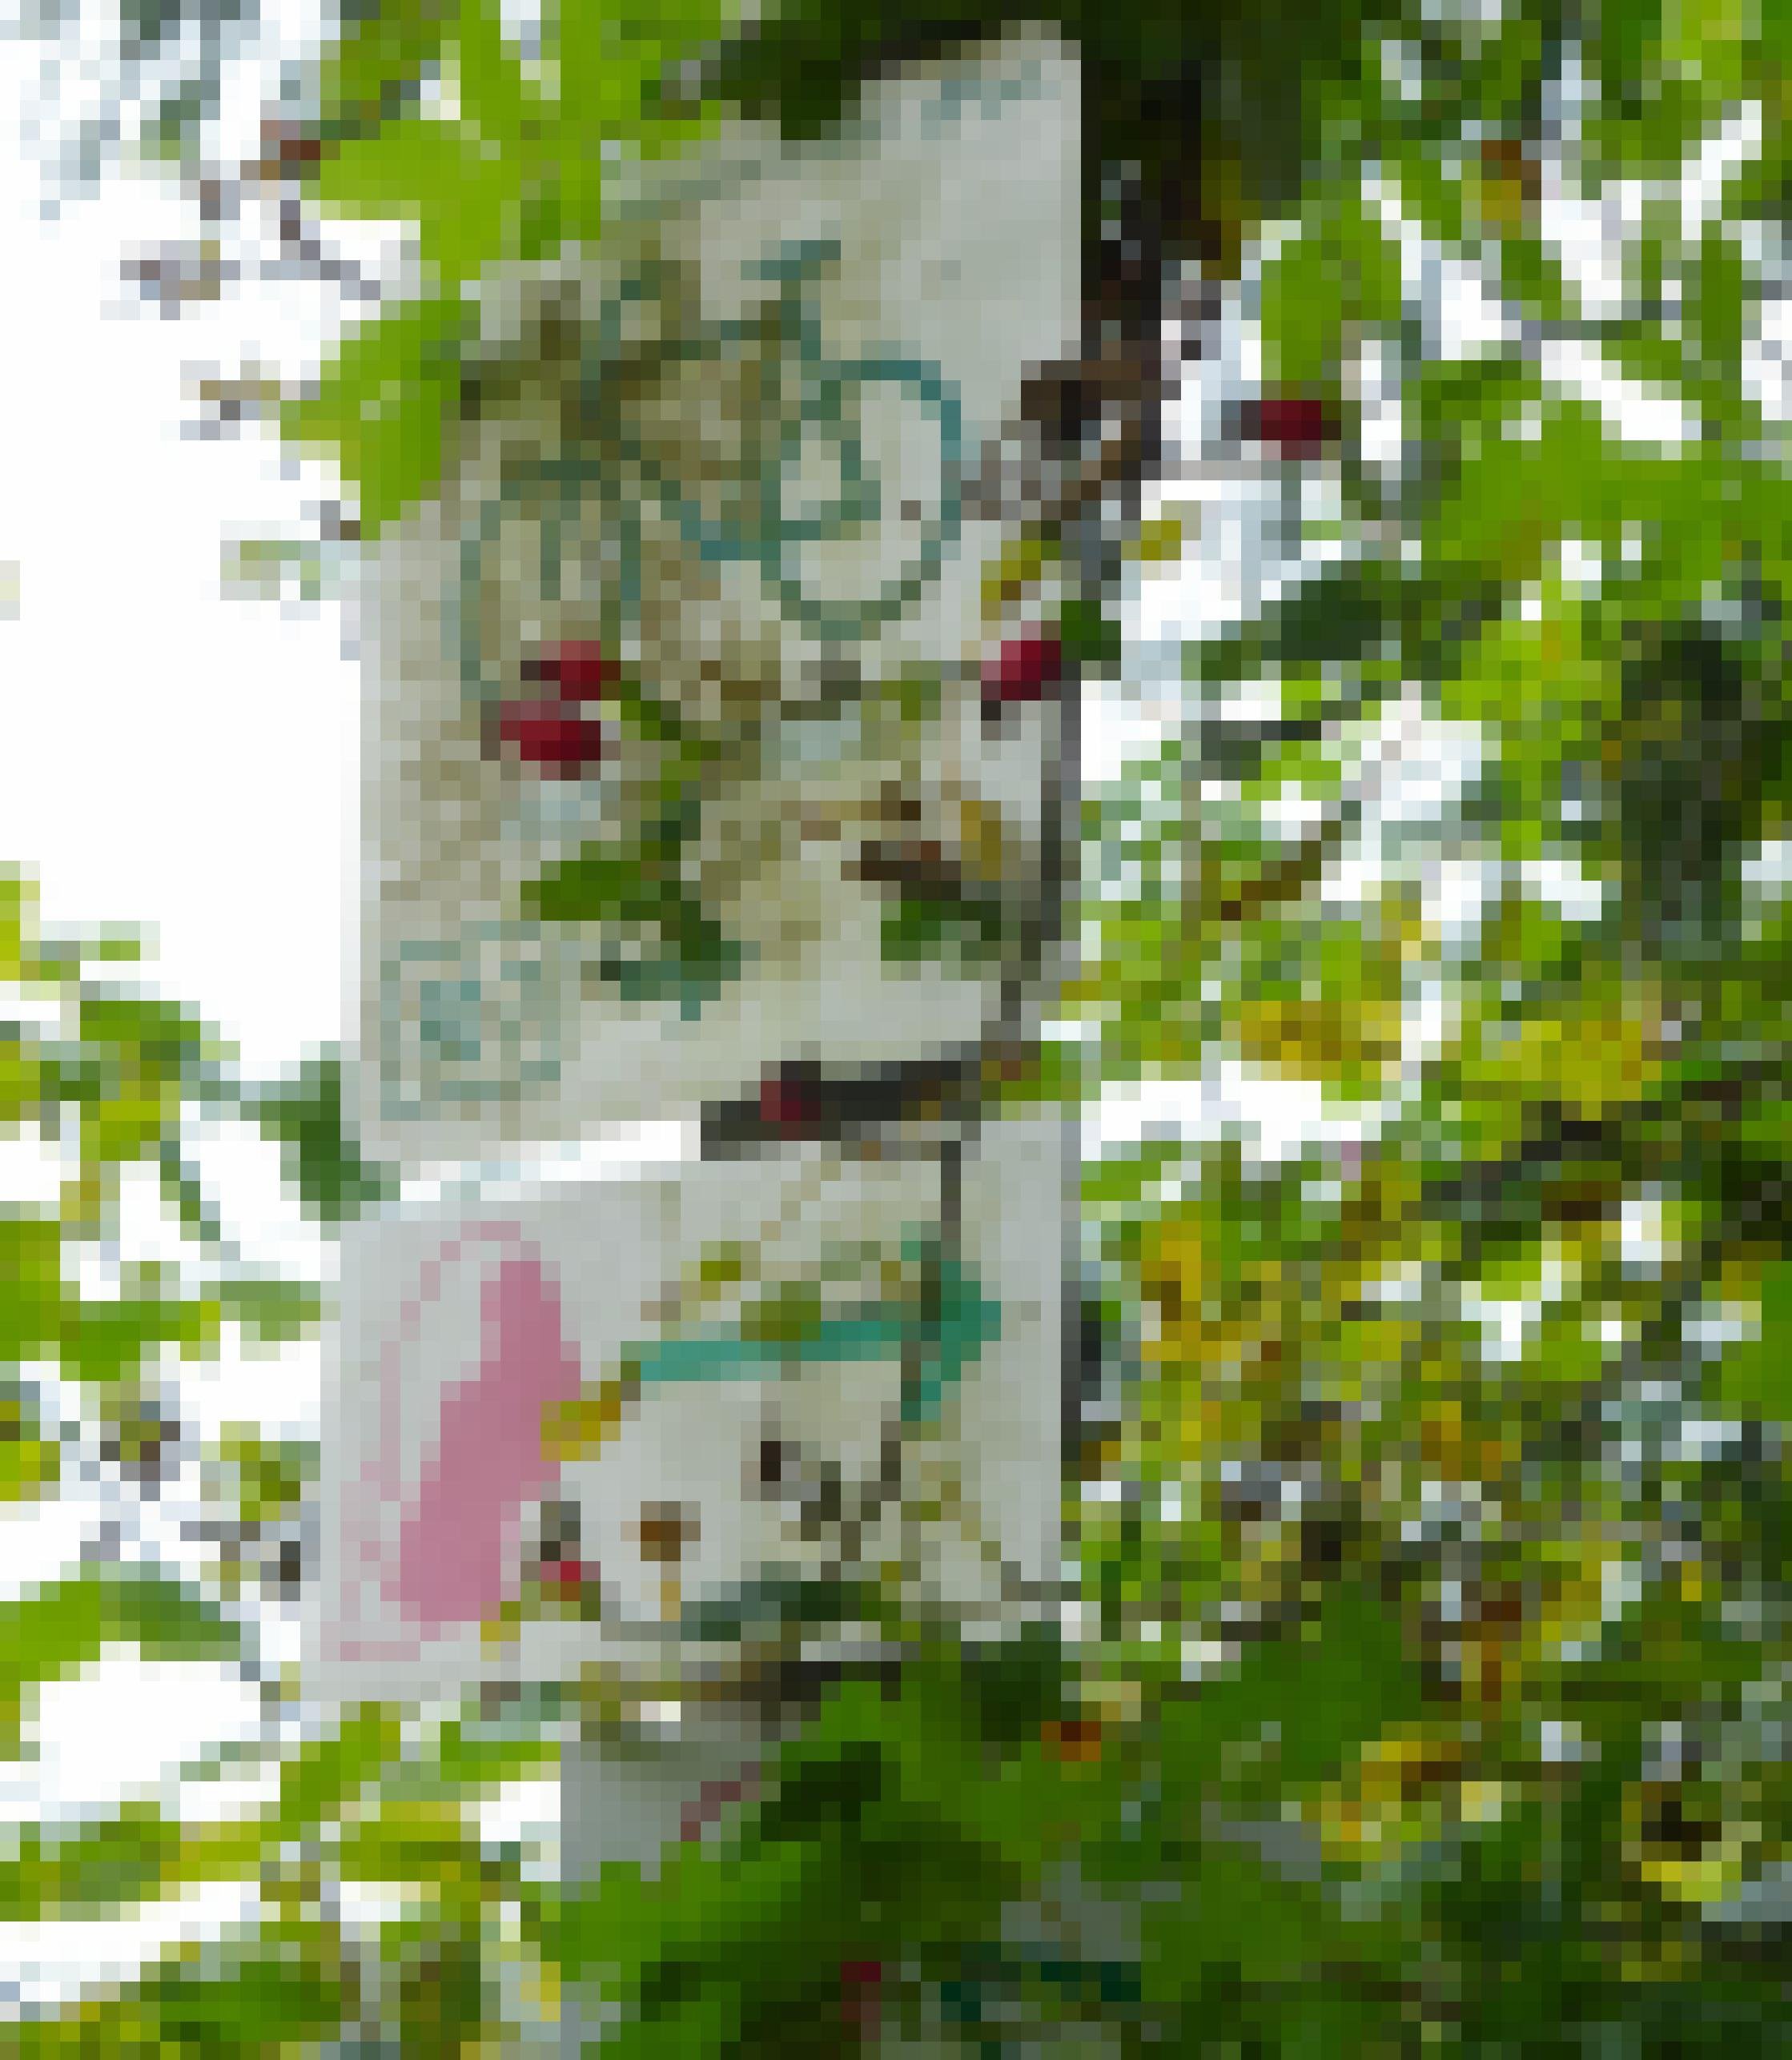 Bemooste Rad- und Wander-Wegweiser an einem Baum, dessen Zweige die Schilder fast ganz verdecken